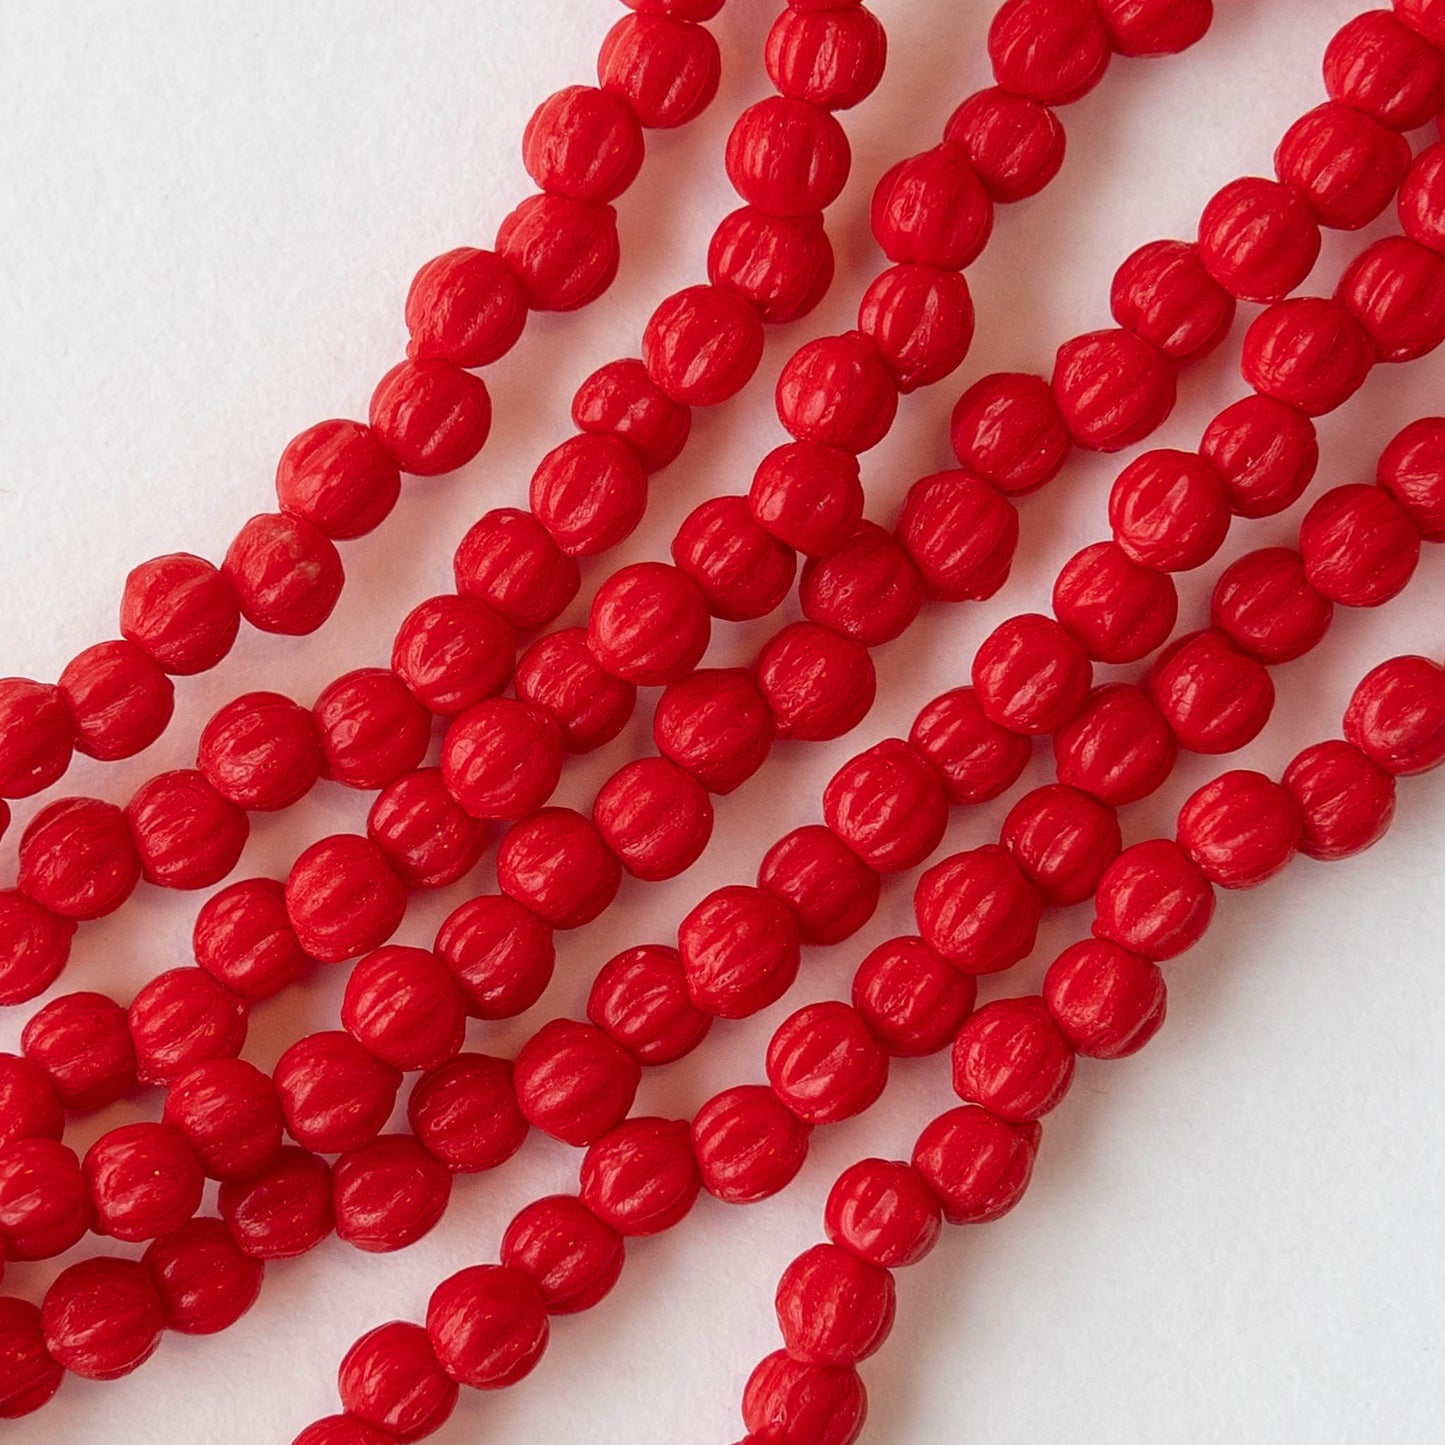 3mm Melon Beads - Semi Matte Opaque Red- 100 Beads